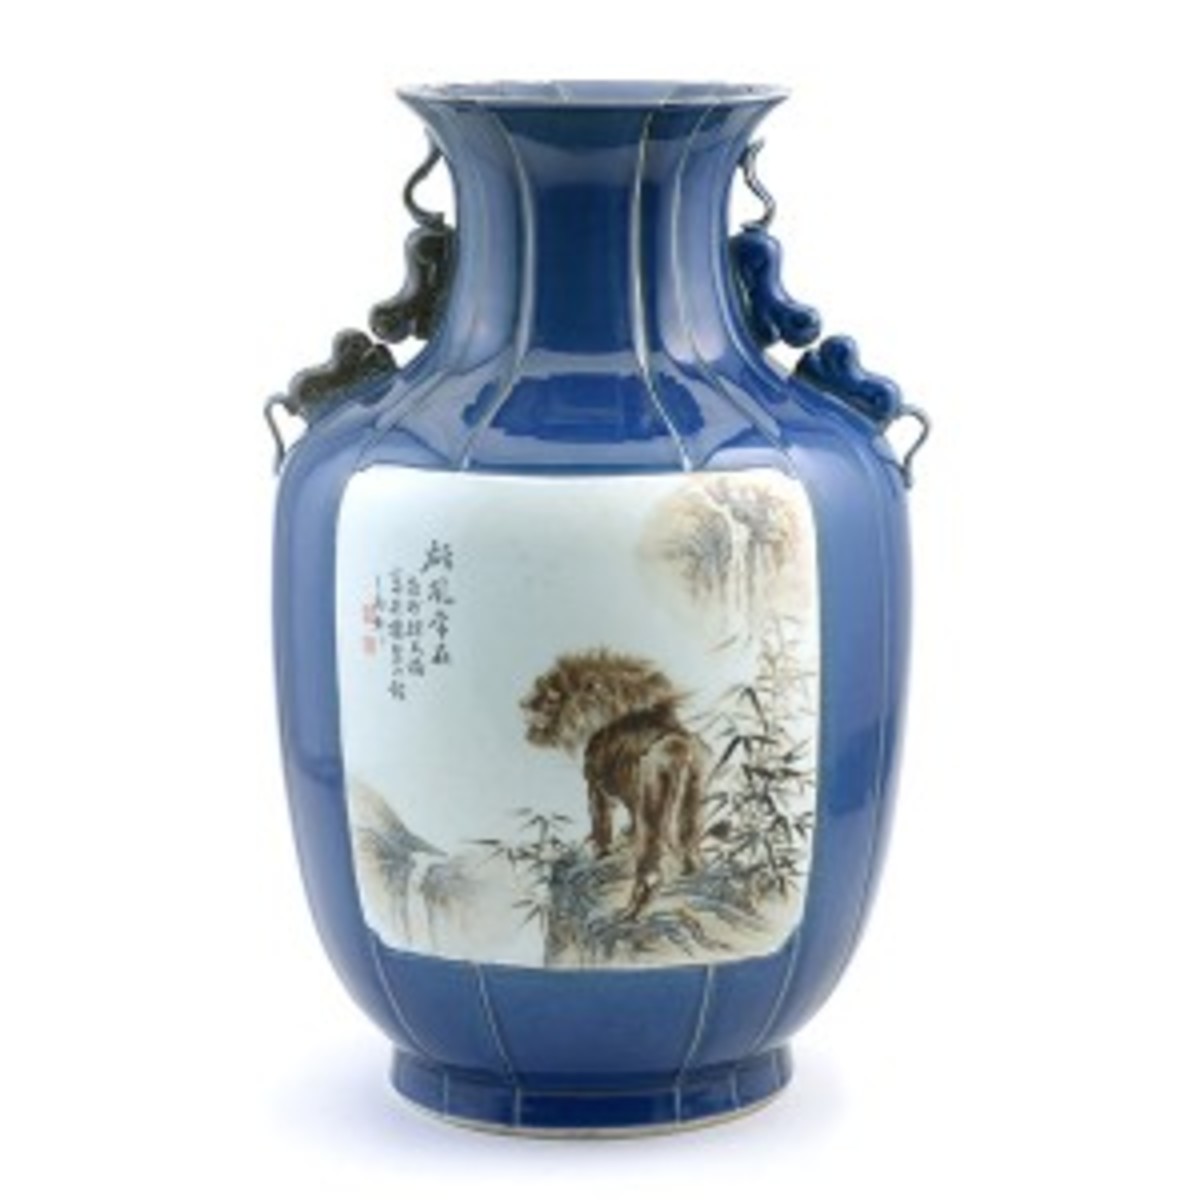 Blue-glazed and enamel decorated vase